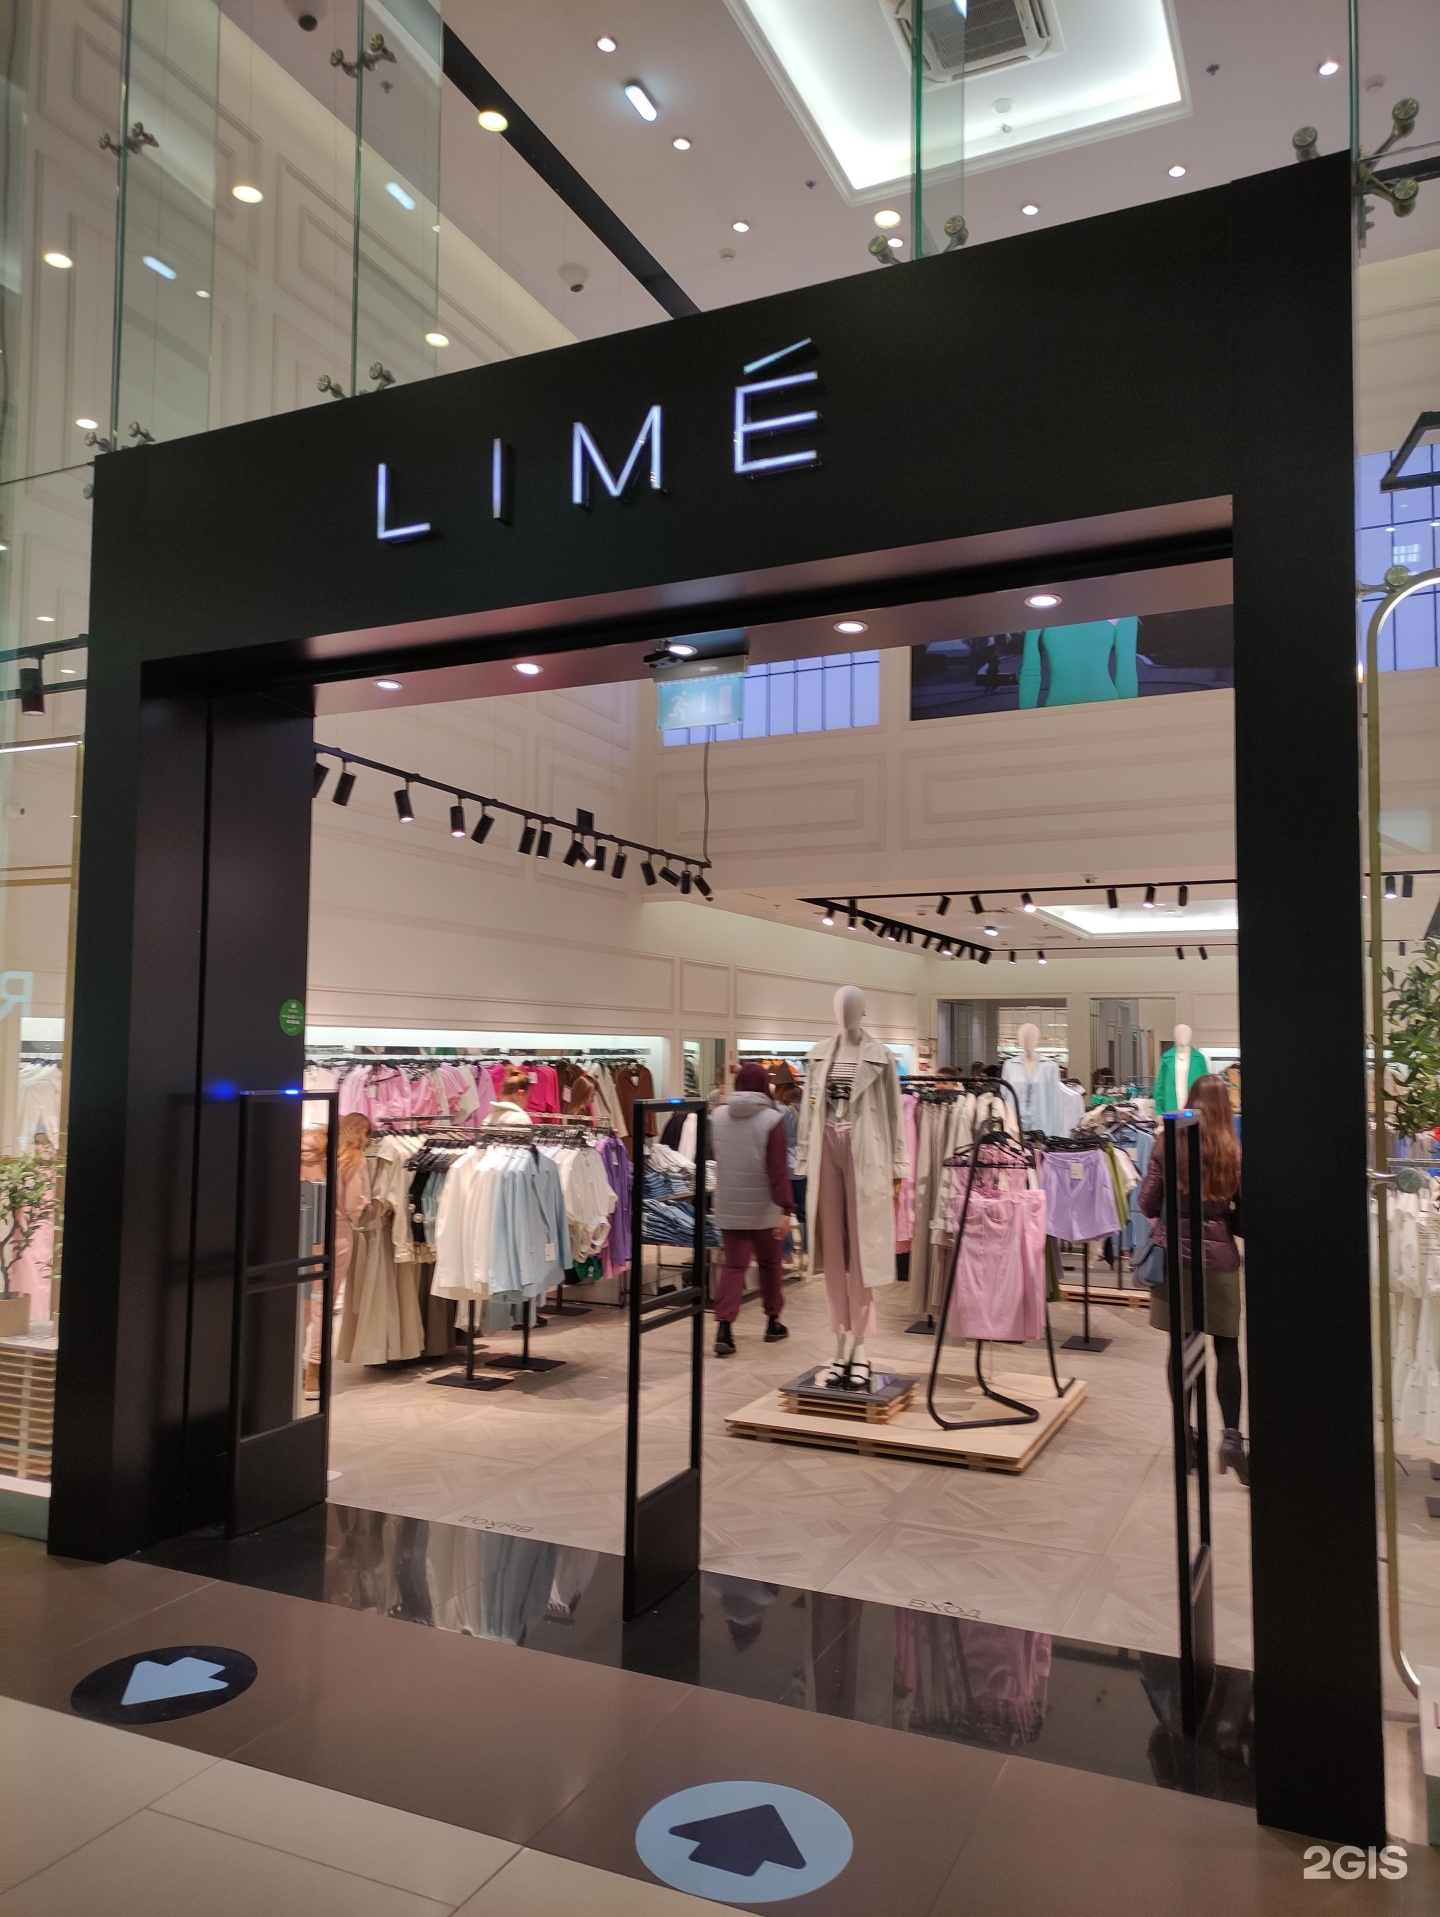 Lime одежда Columbus. Lime женская одежда магазины в Москве. Владелец магазина Lime. Lime магазин одежды новый. Одежда орджоникидзе